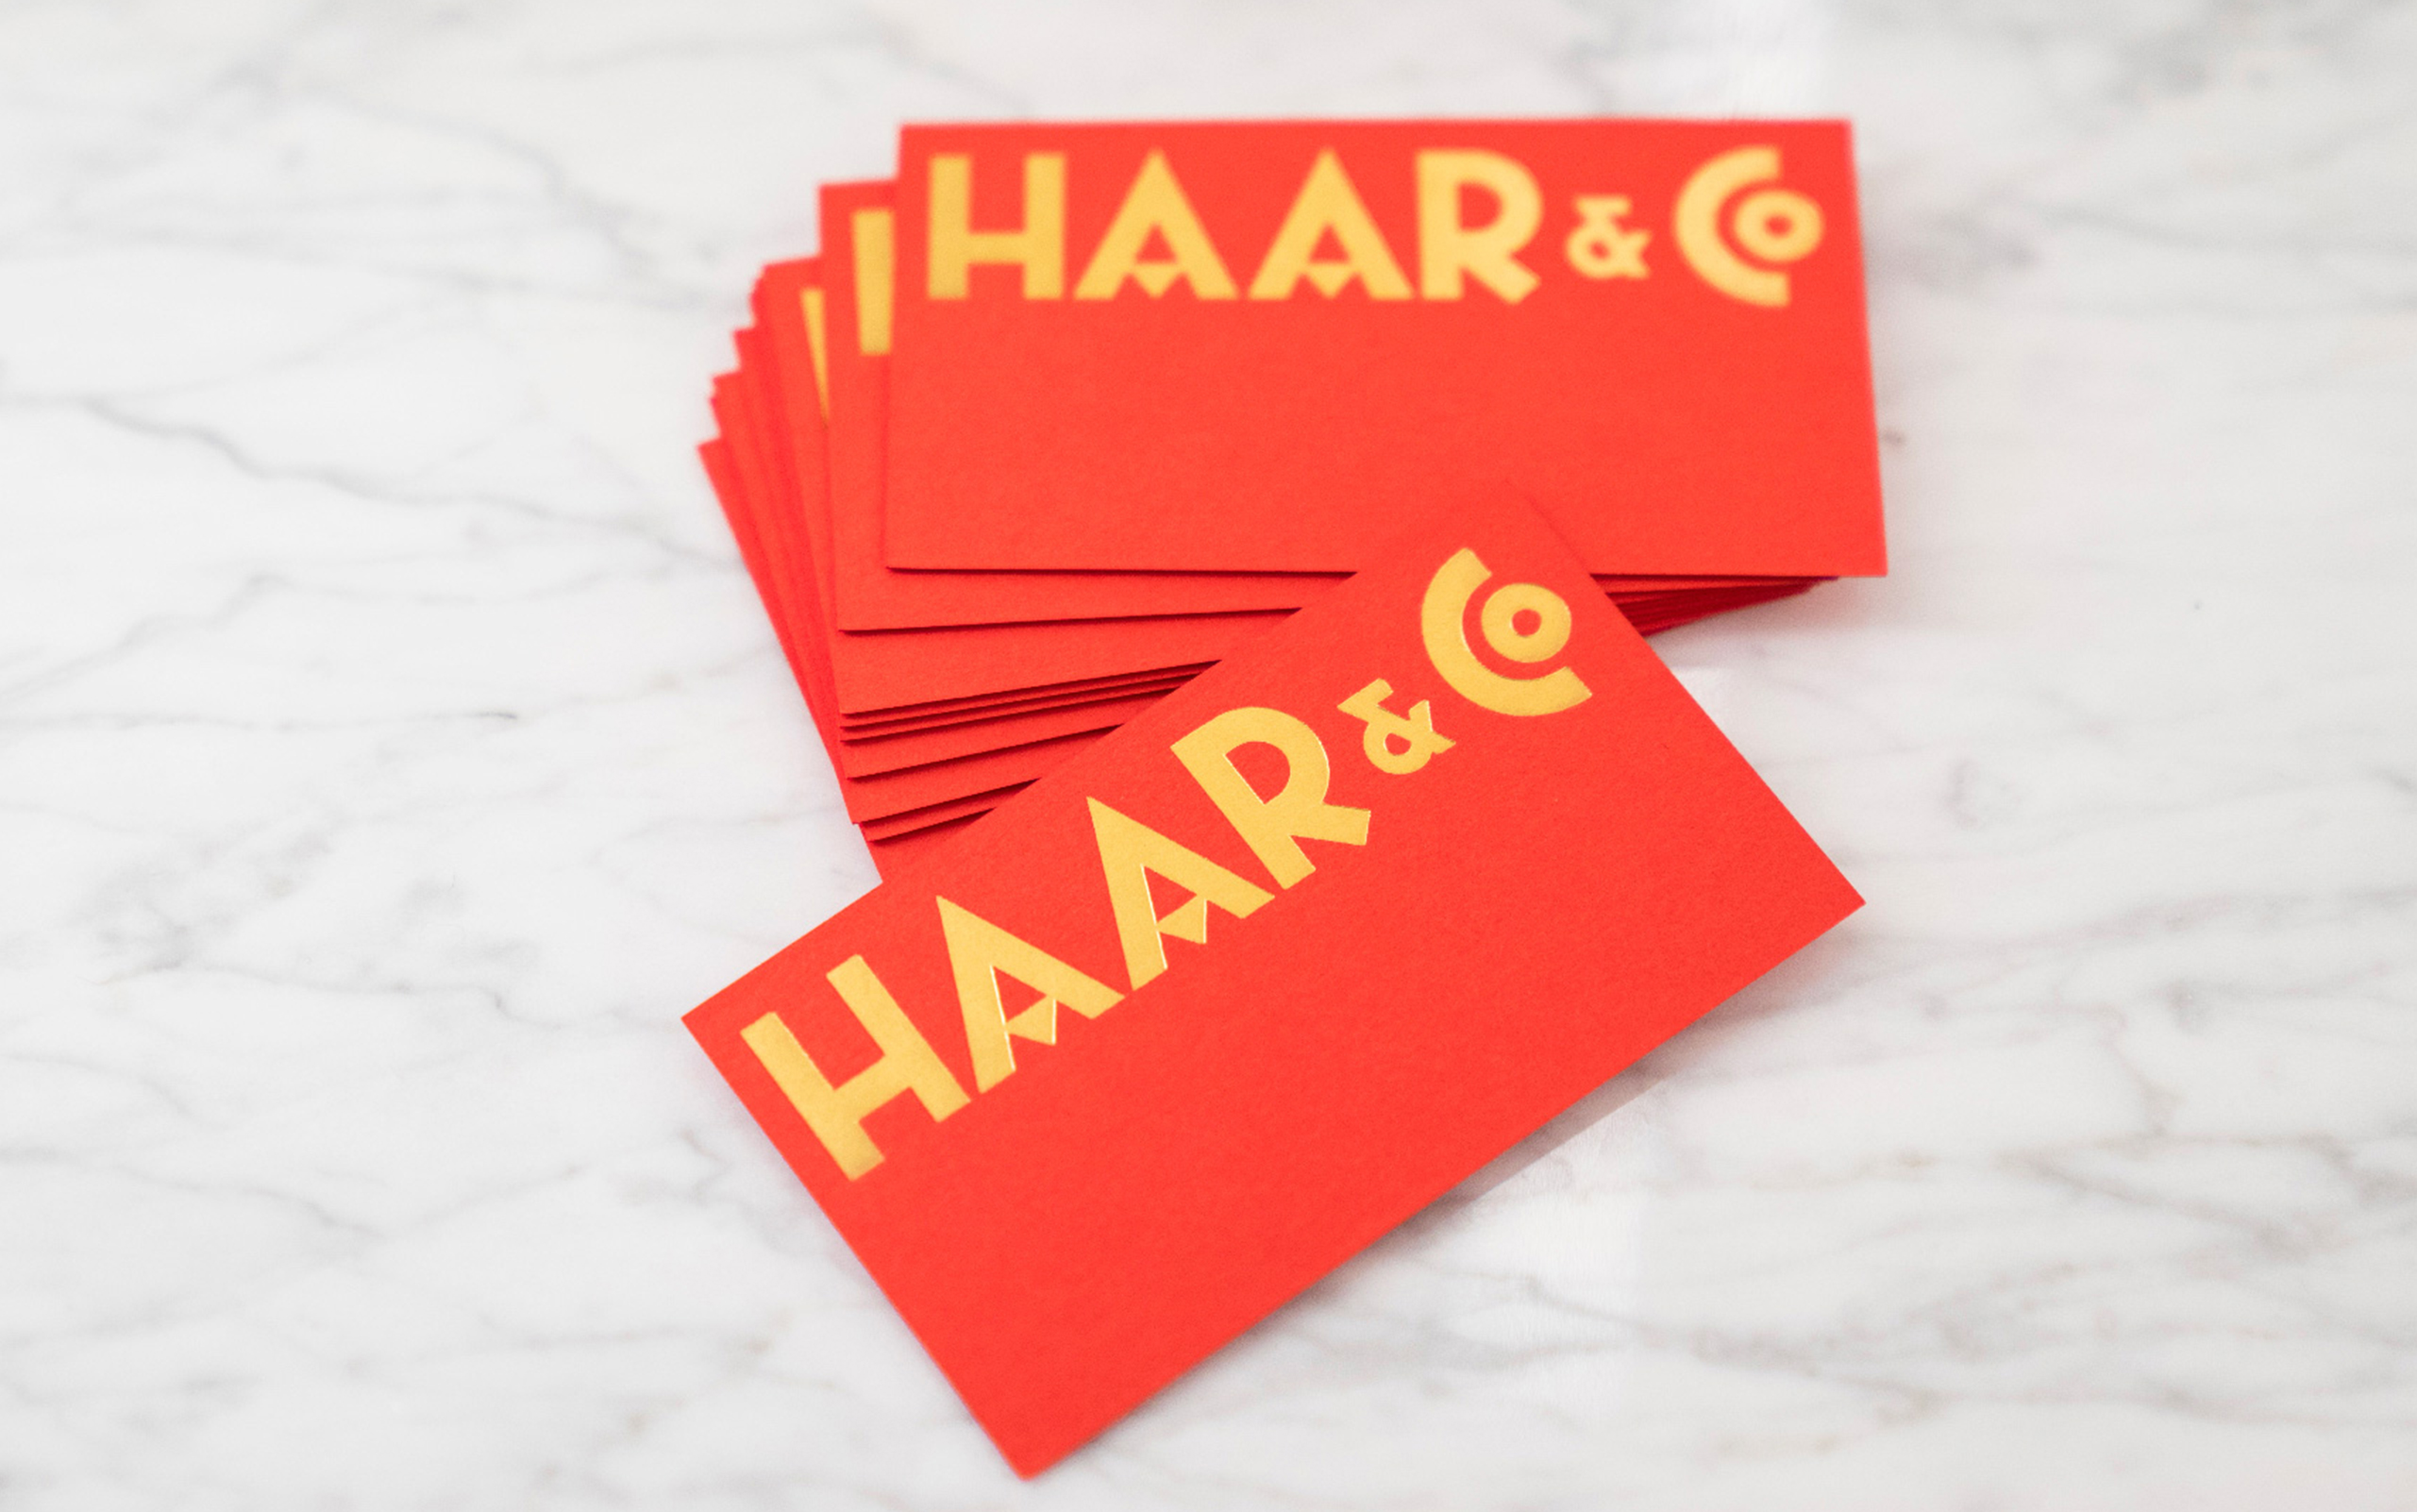 Haar & Co.